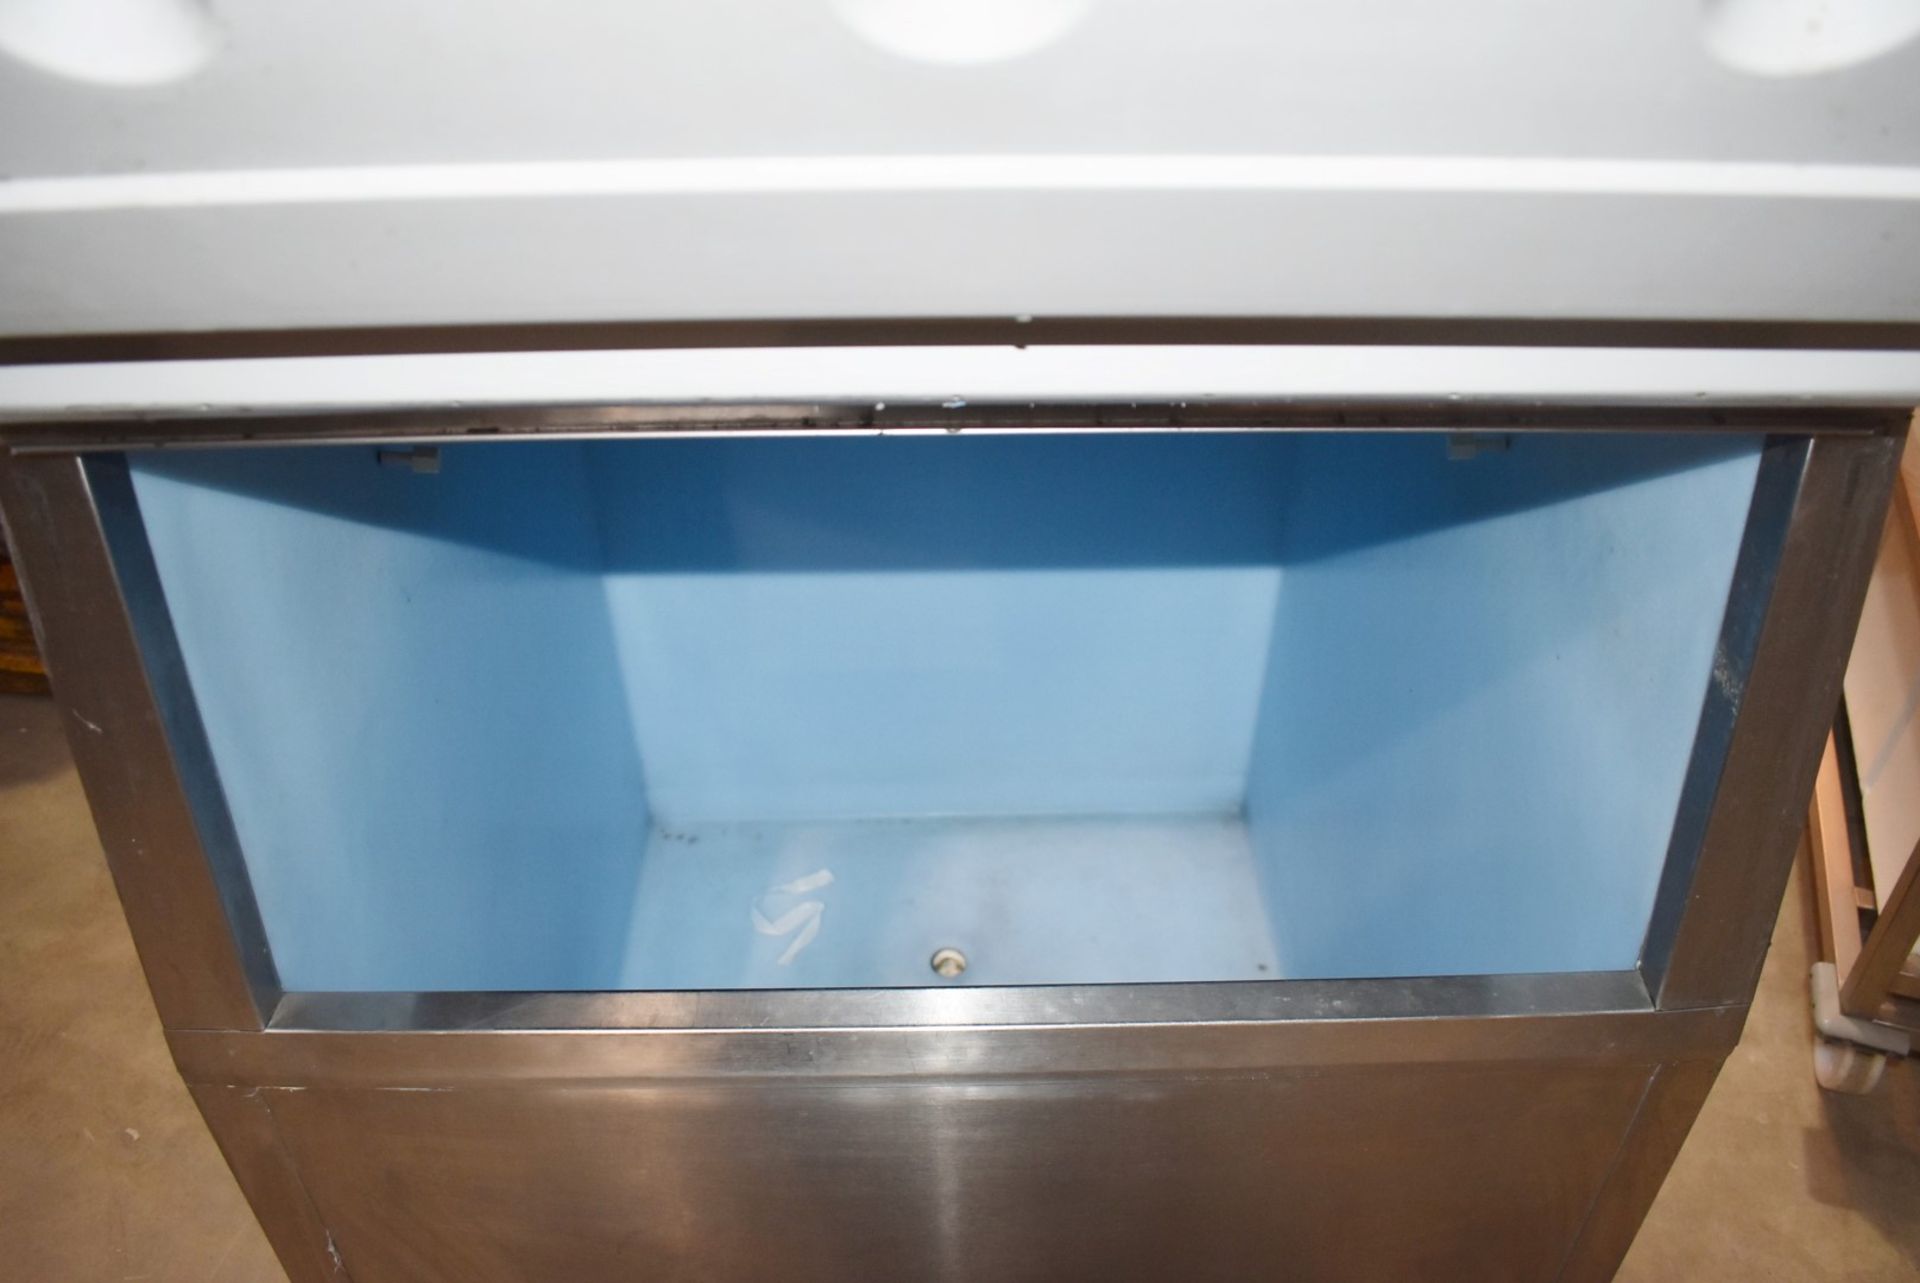 1 x Hoshizaki FM-480AFE Ice Machine - Produces Upto 480kg of Ice Flakes Per Days - Includes Large - Image 2 of 12